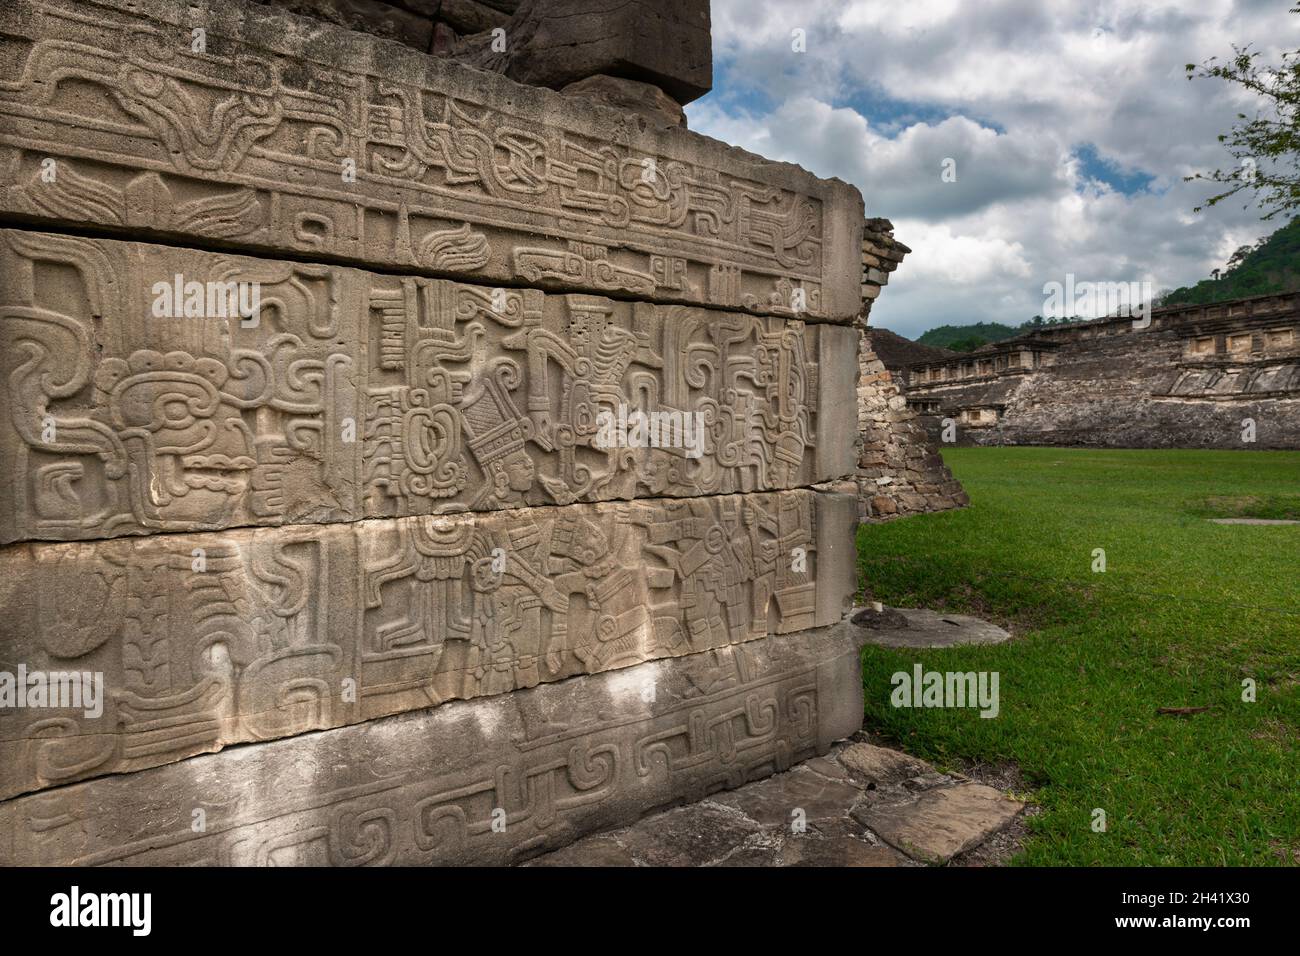 Detalle de un tallado bajo relieve en una pirámide en el yacimiento arqueológico DE EL Tajin, en Papantla, Veracruz, México. Foto de stock